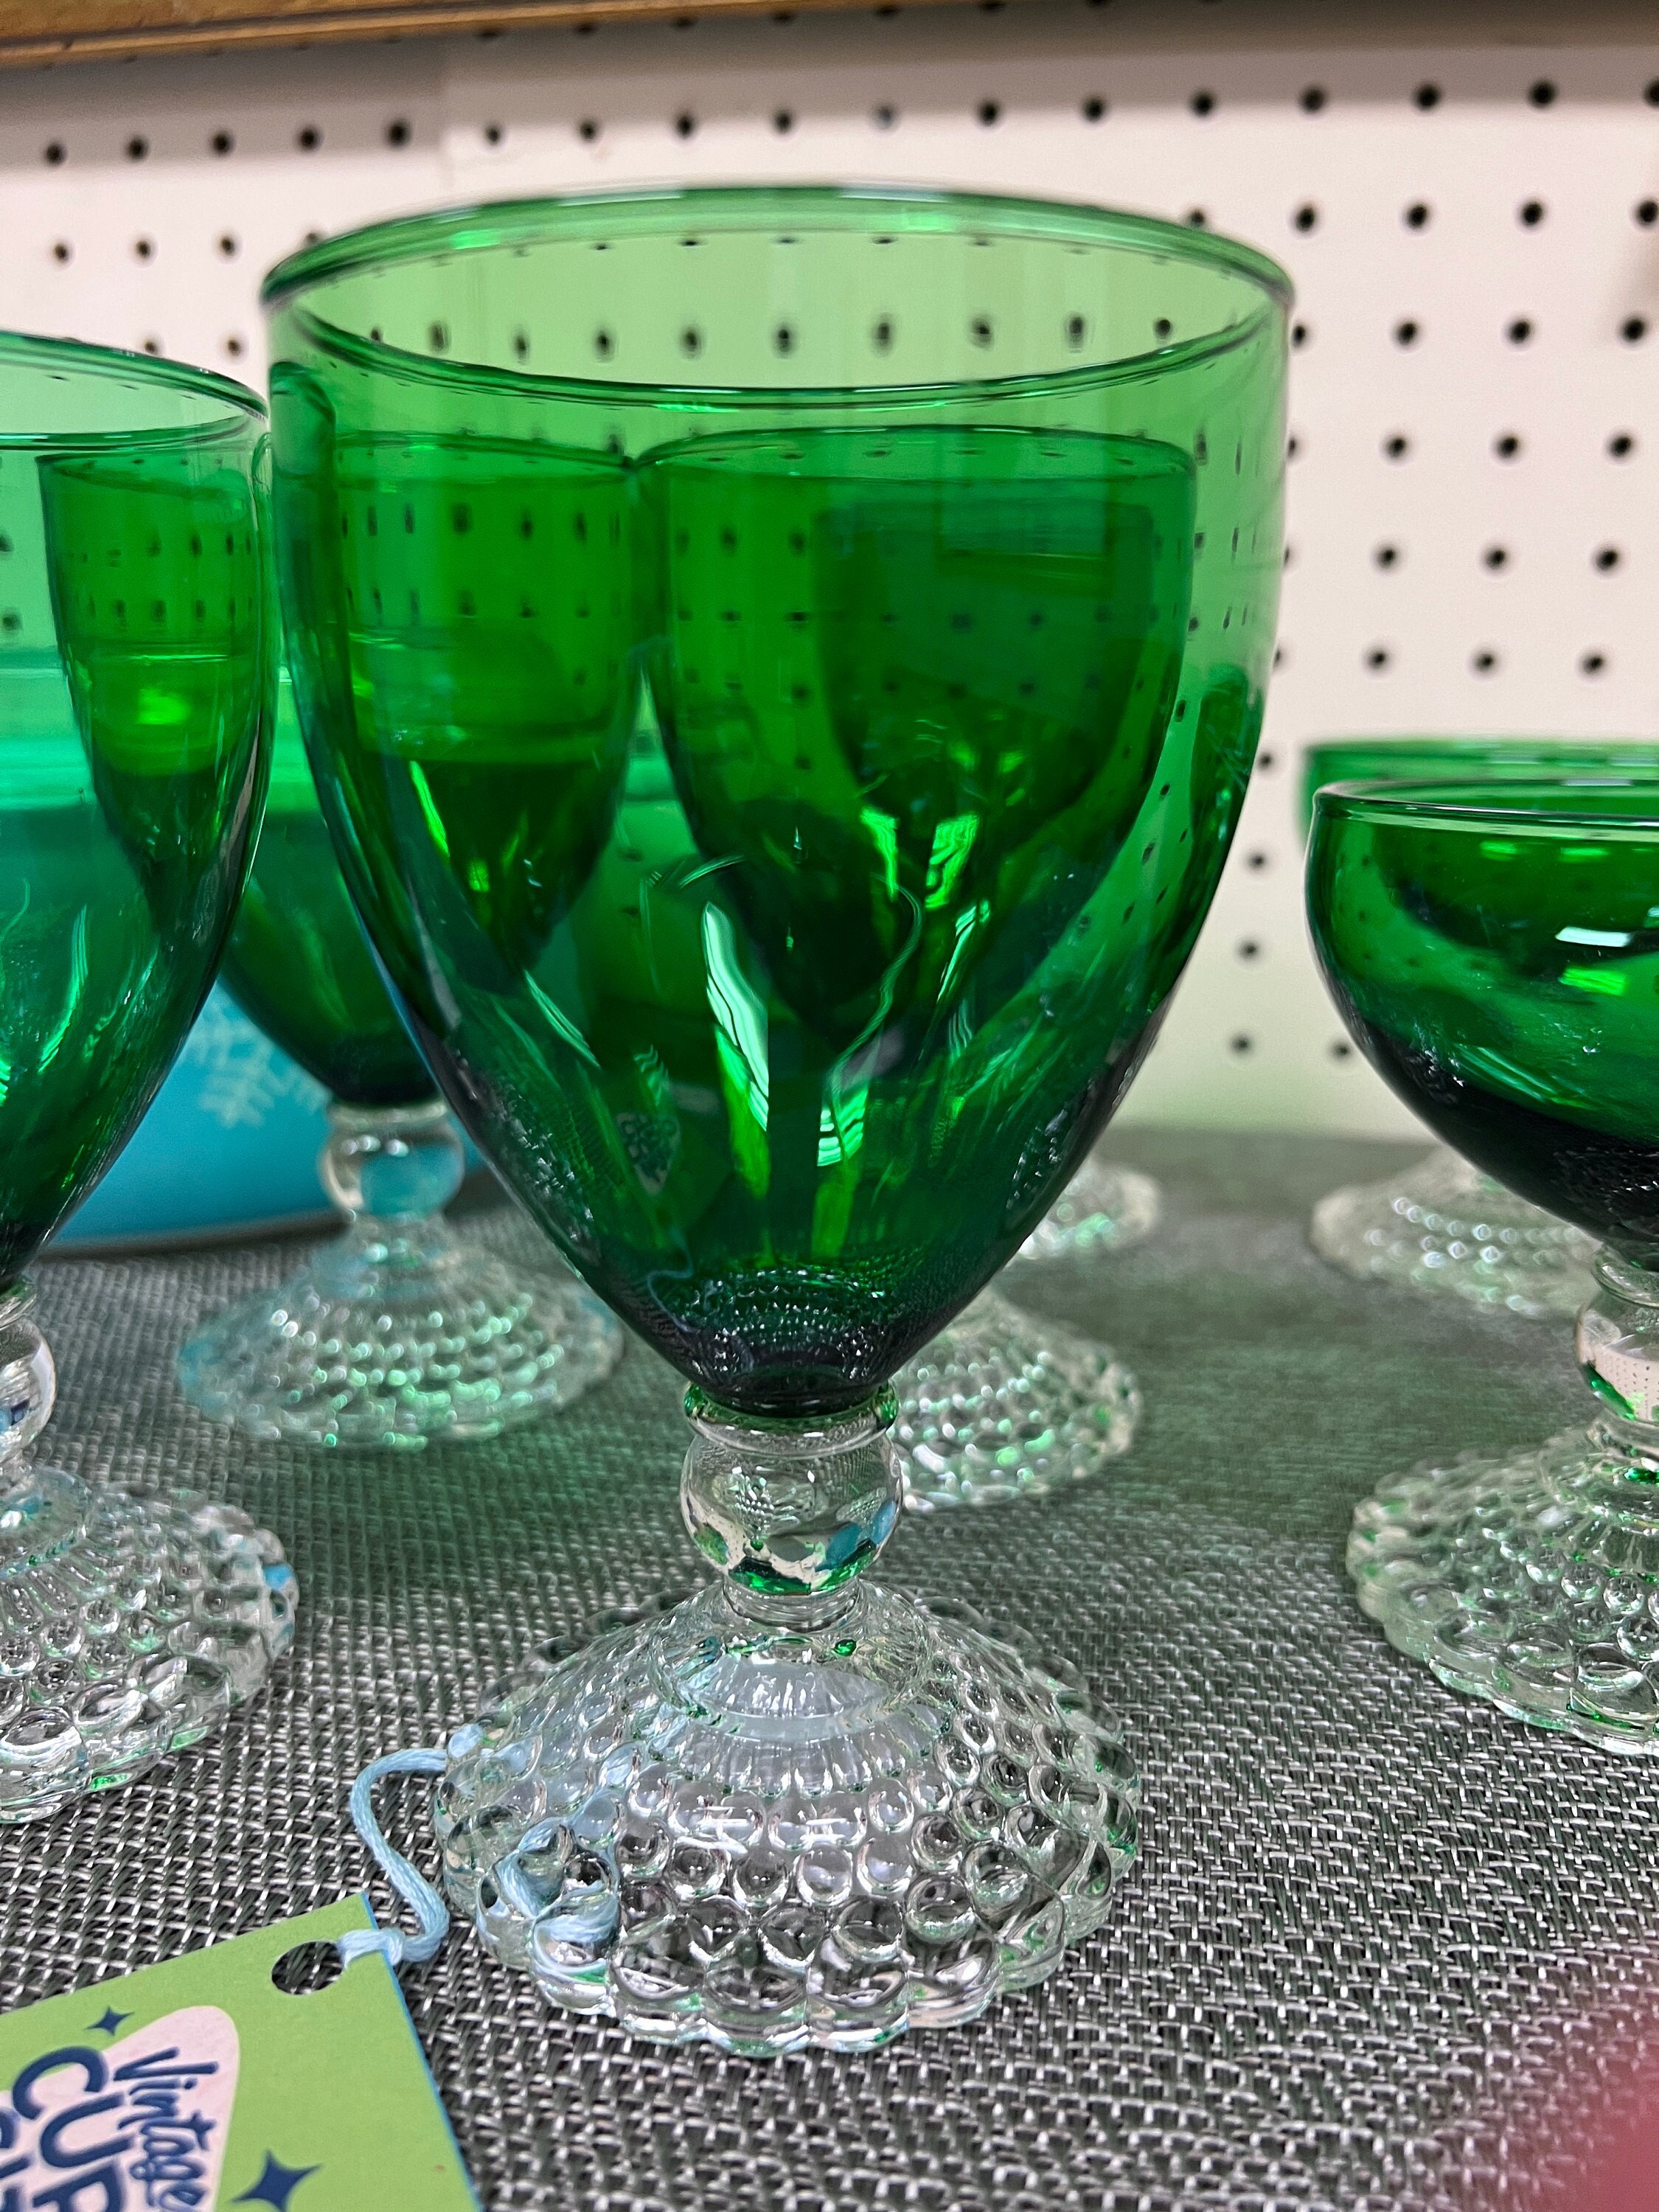 Bubble Glassware 